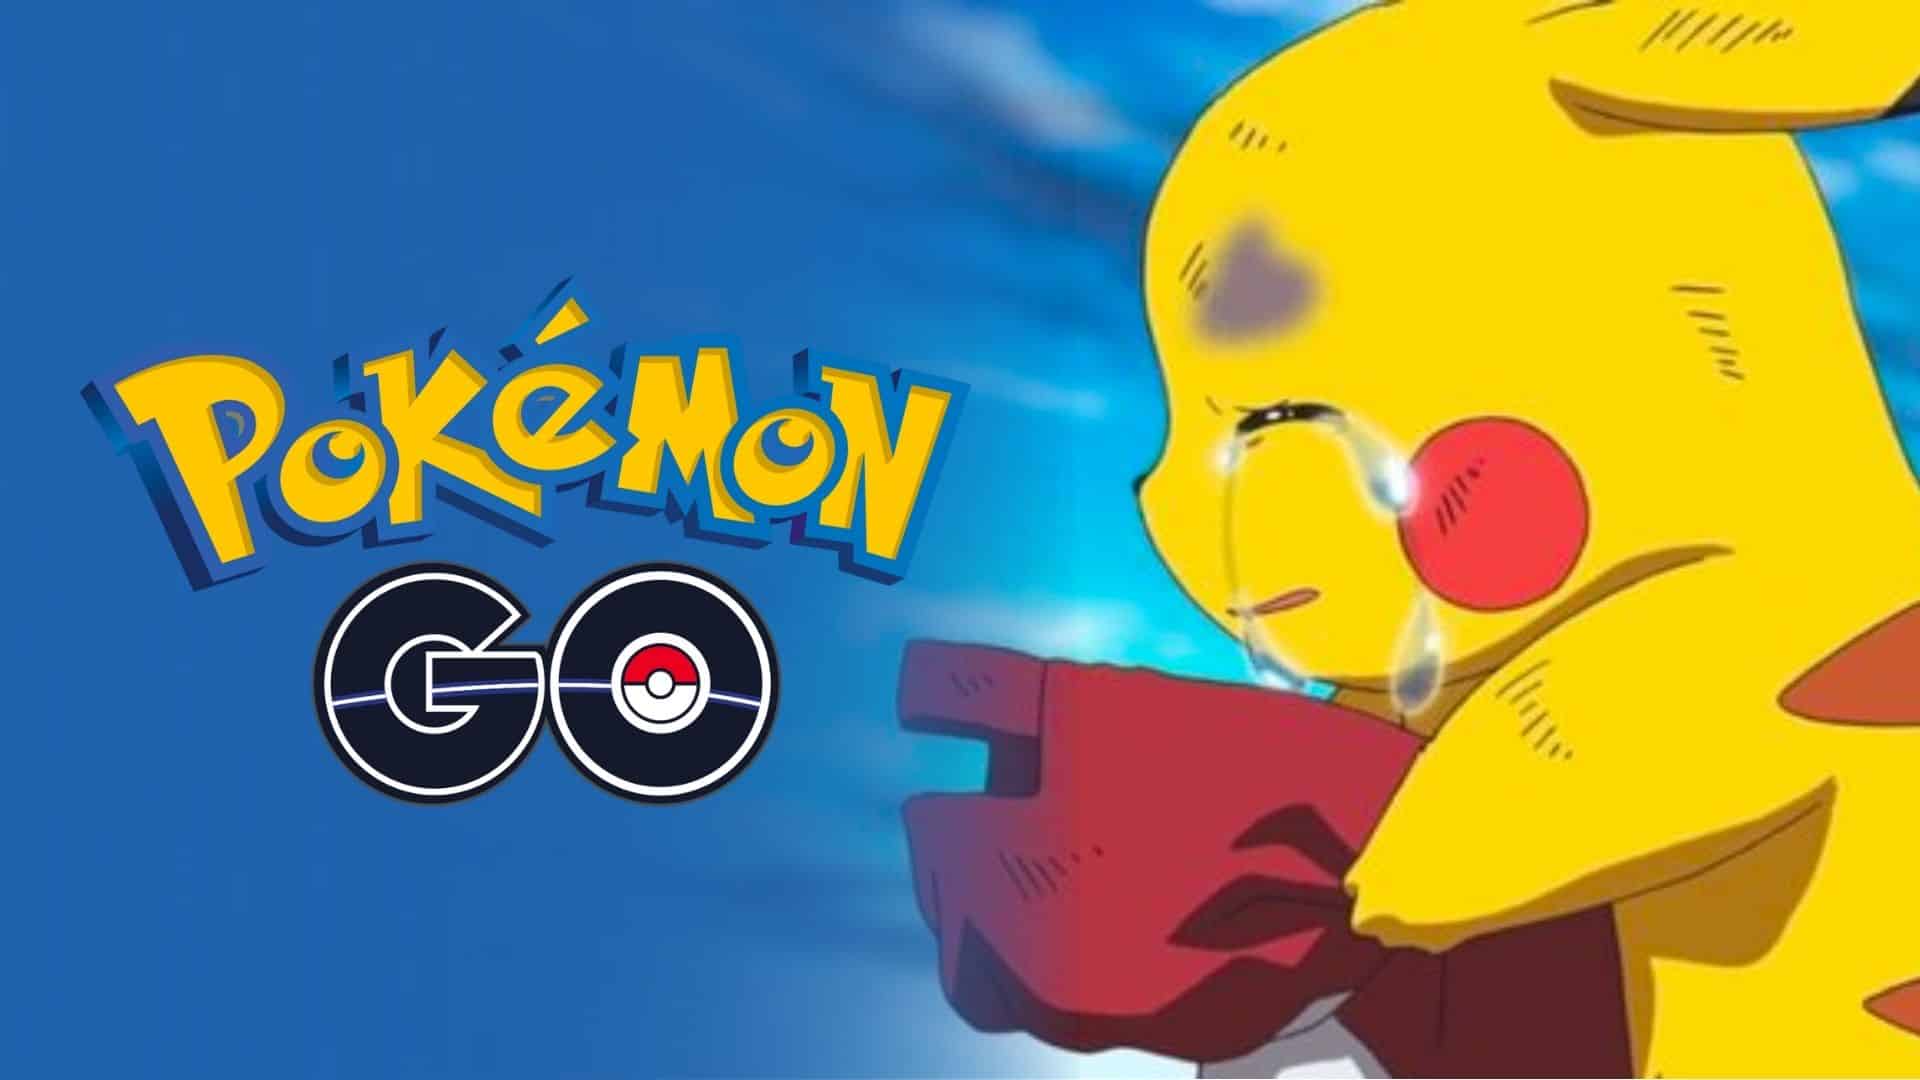 pokemon go logo with pikachu